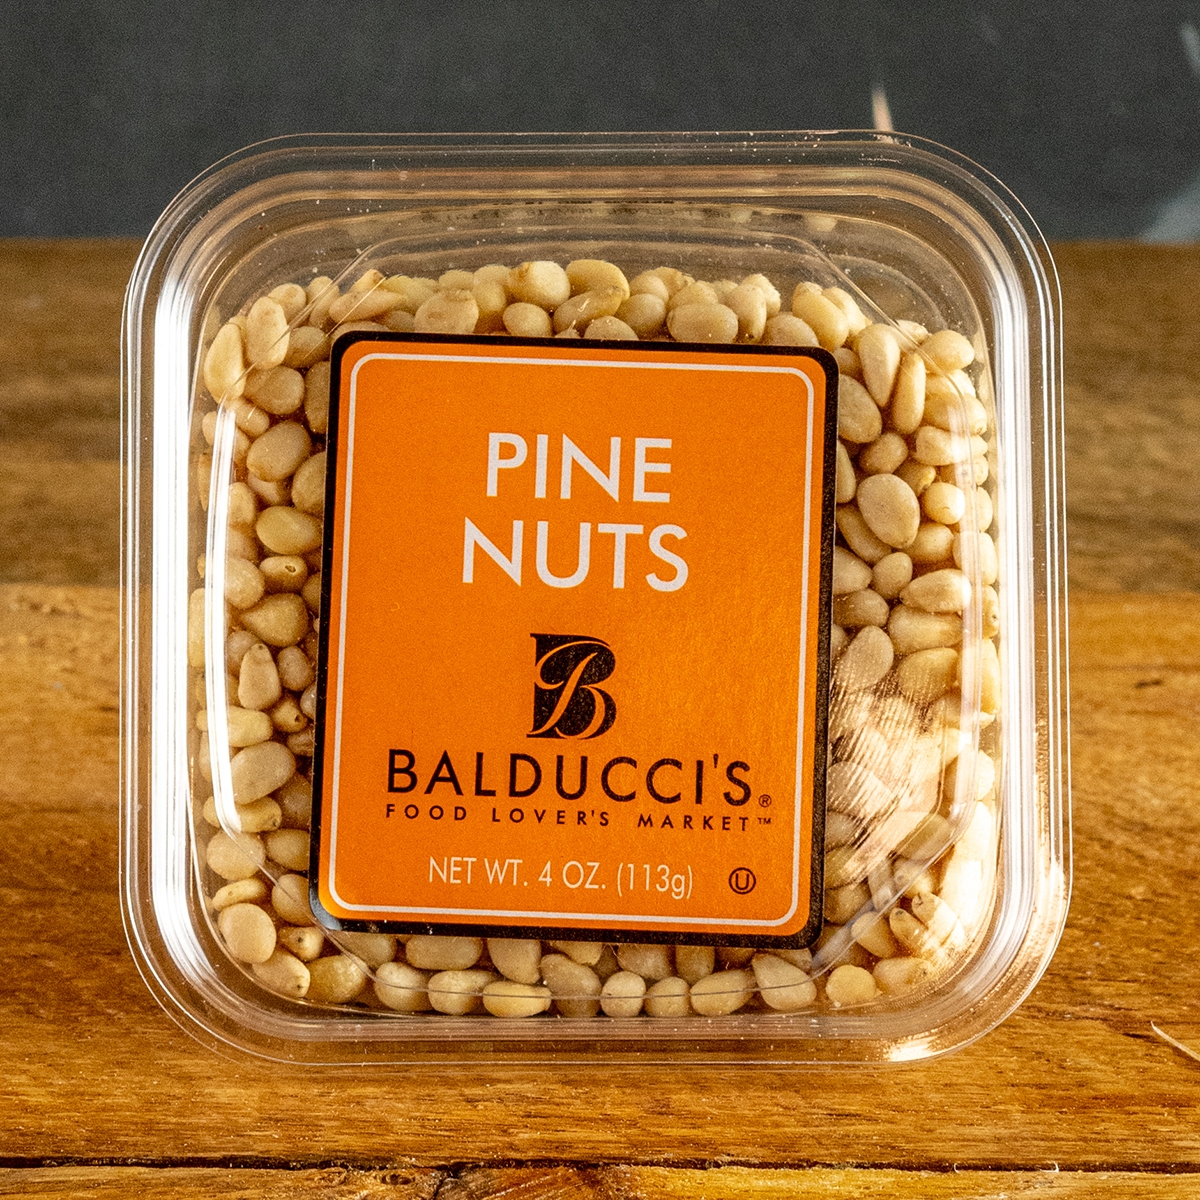 Balducci’s Pine Nuts